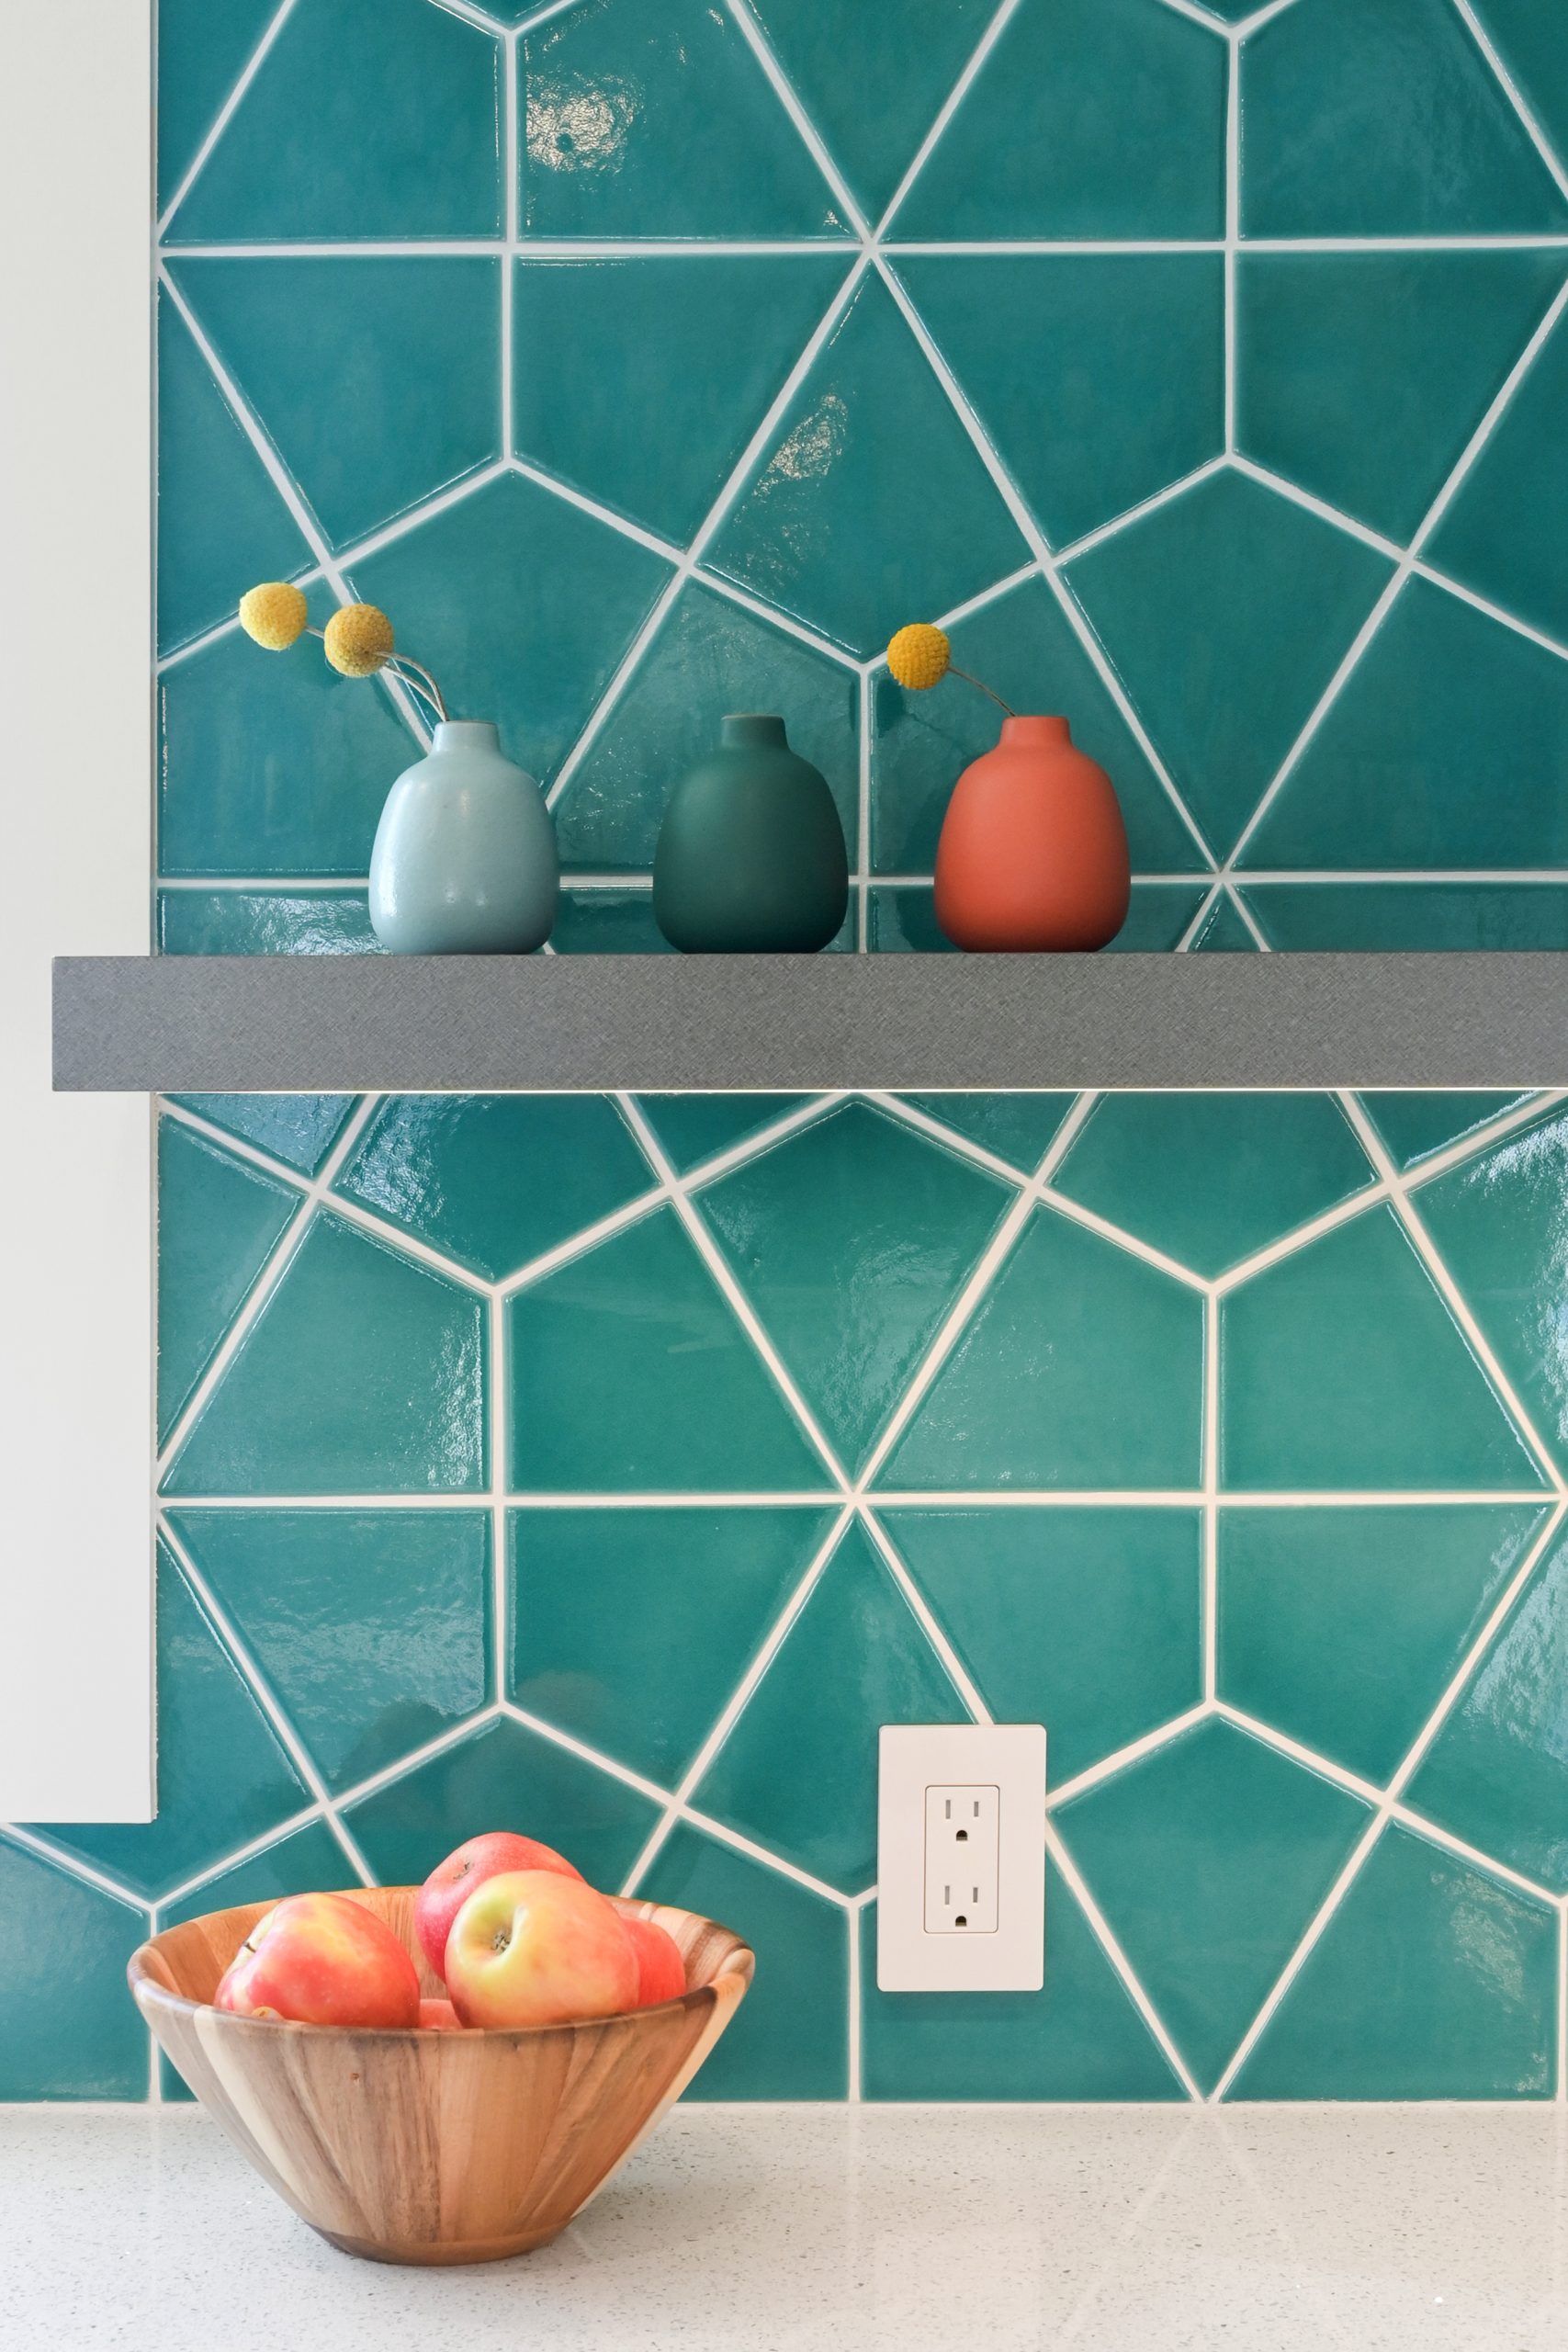 teal tile backsplash with gray shelf